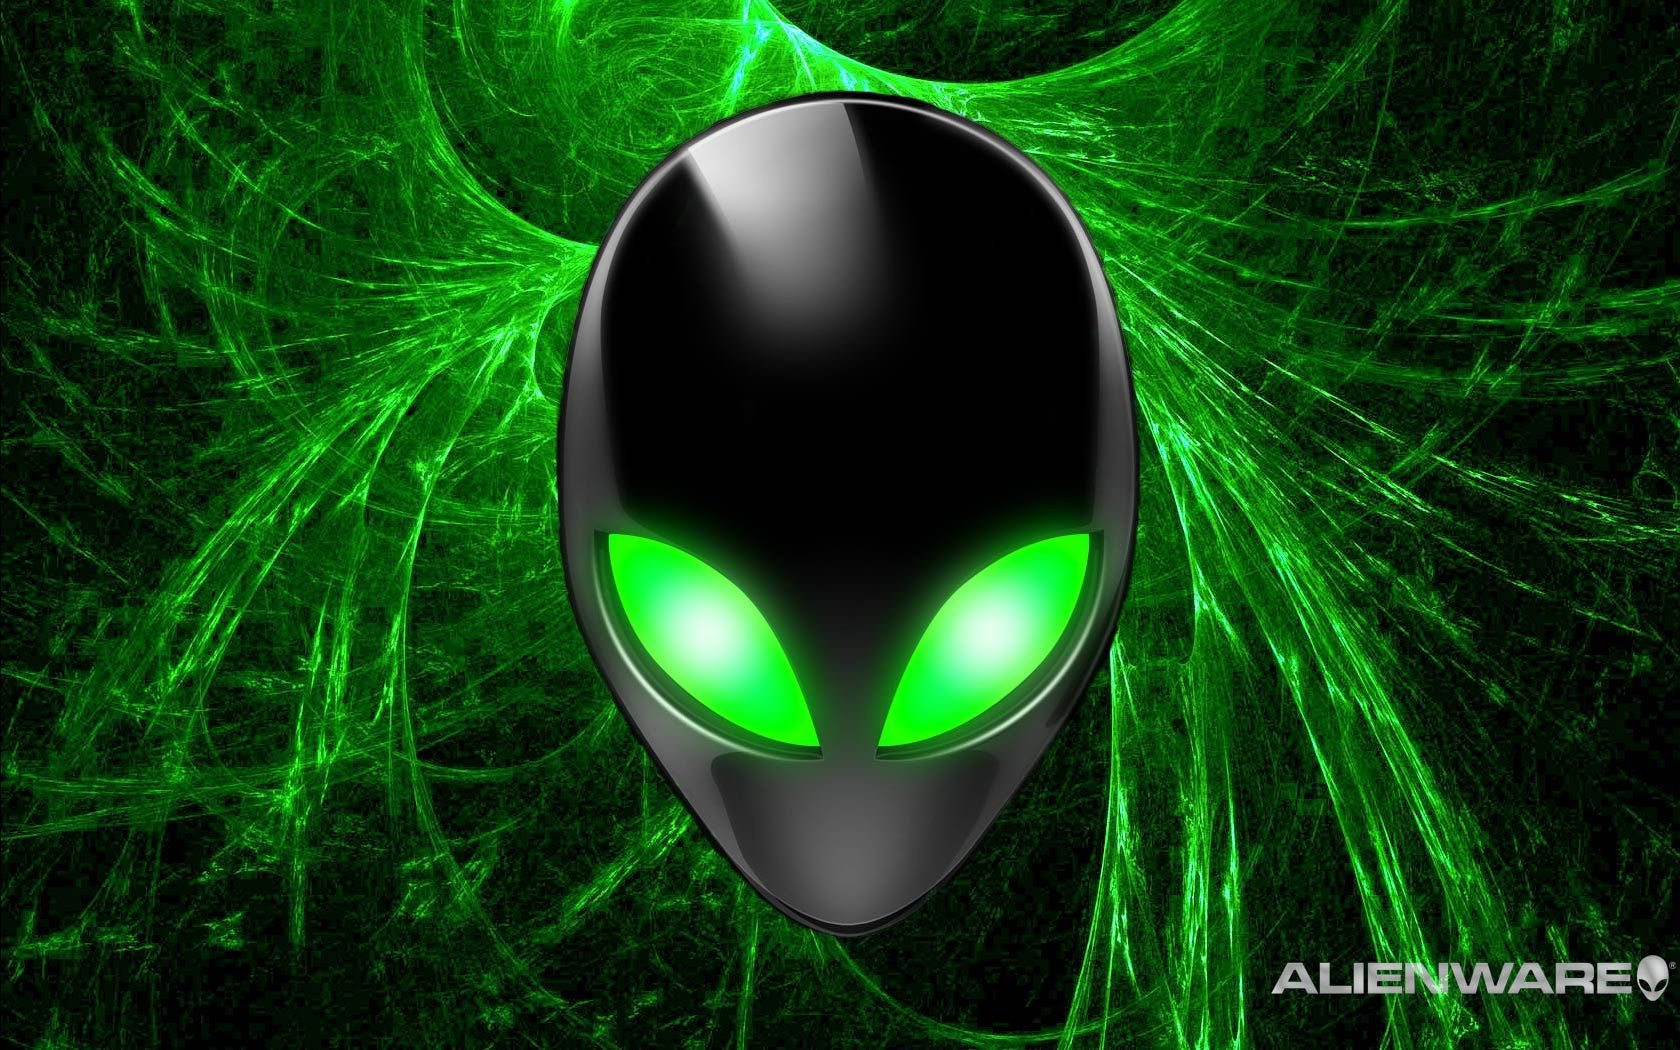 Alienware Desktop Background Pic In Alien